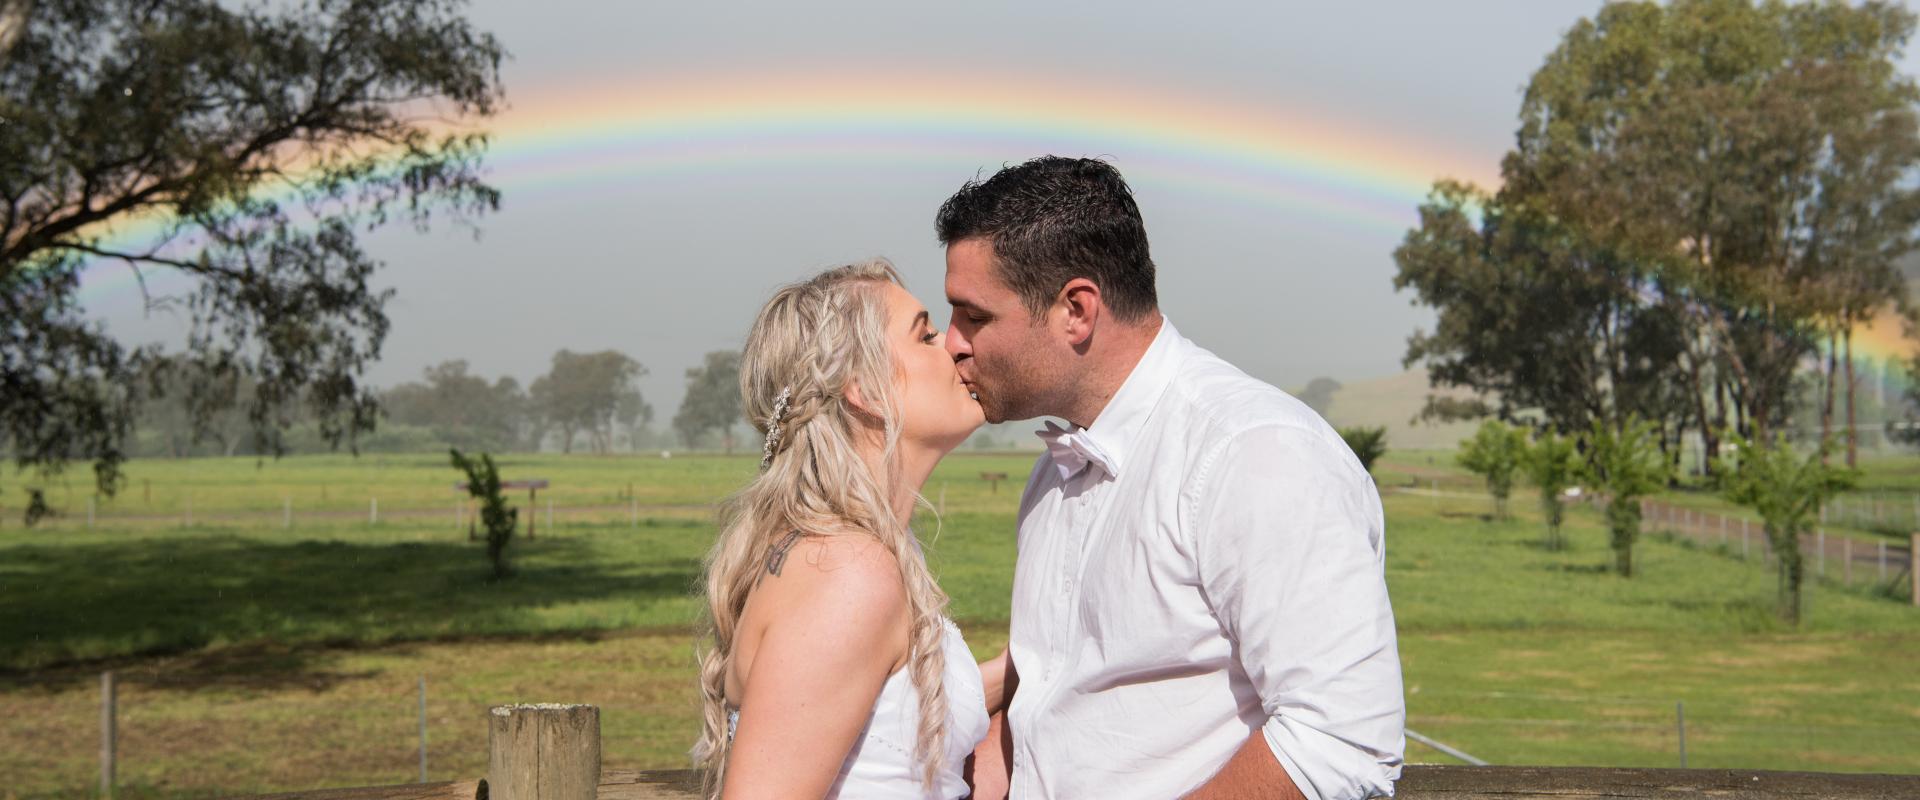 Romantic Wedding Photo with Rainbow